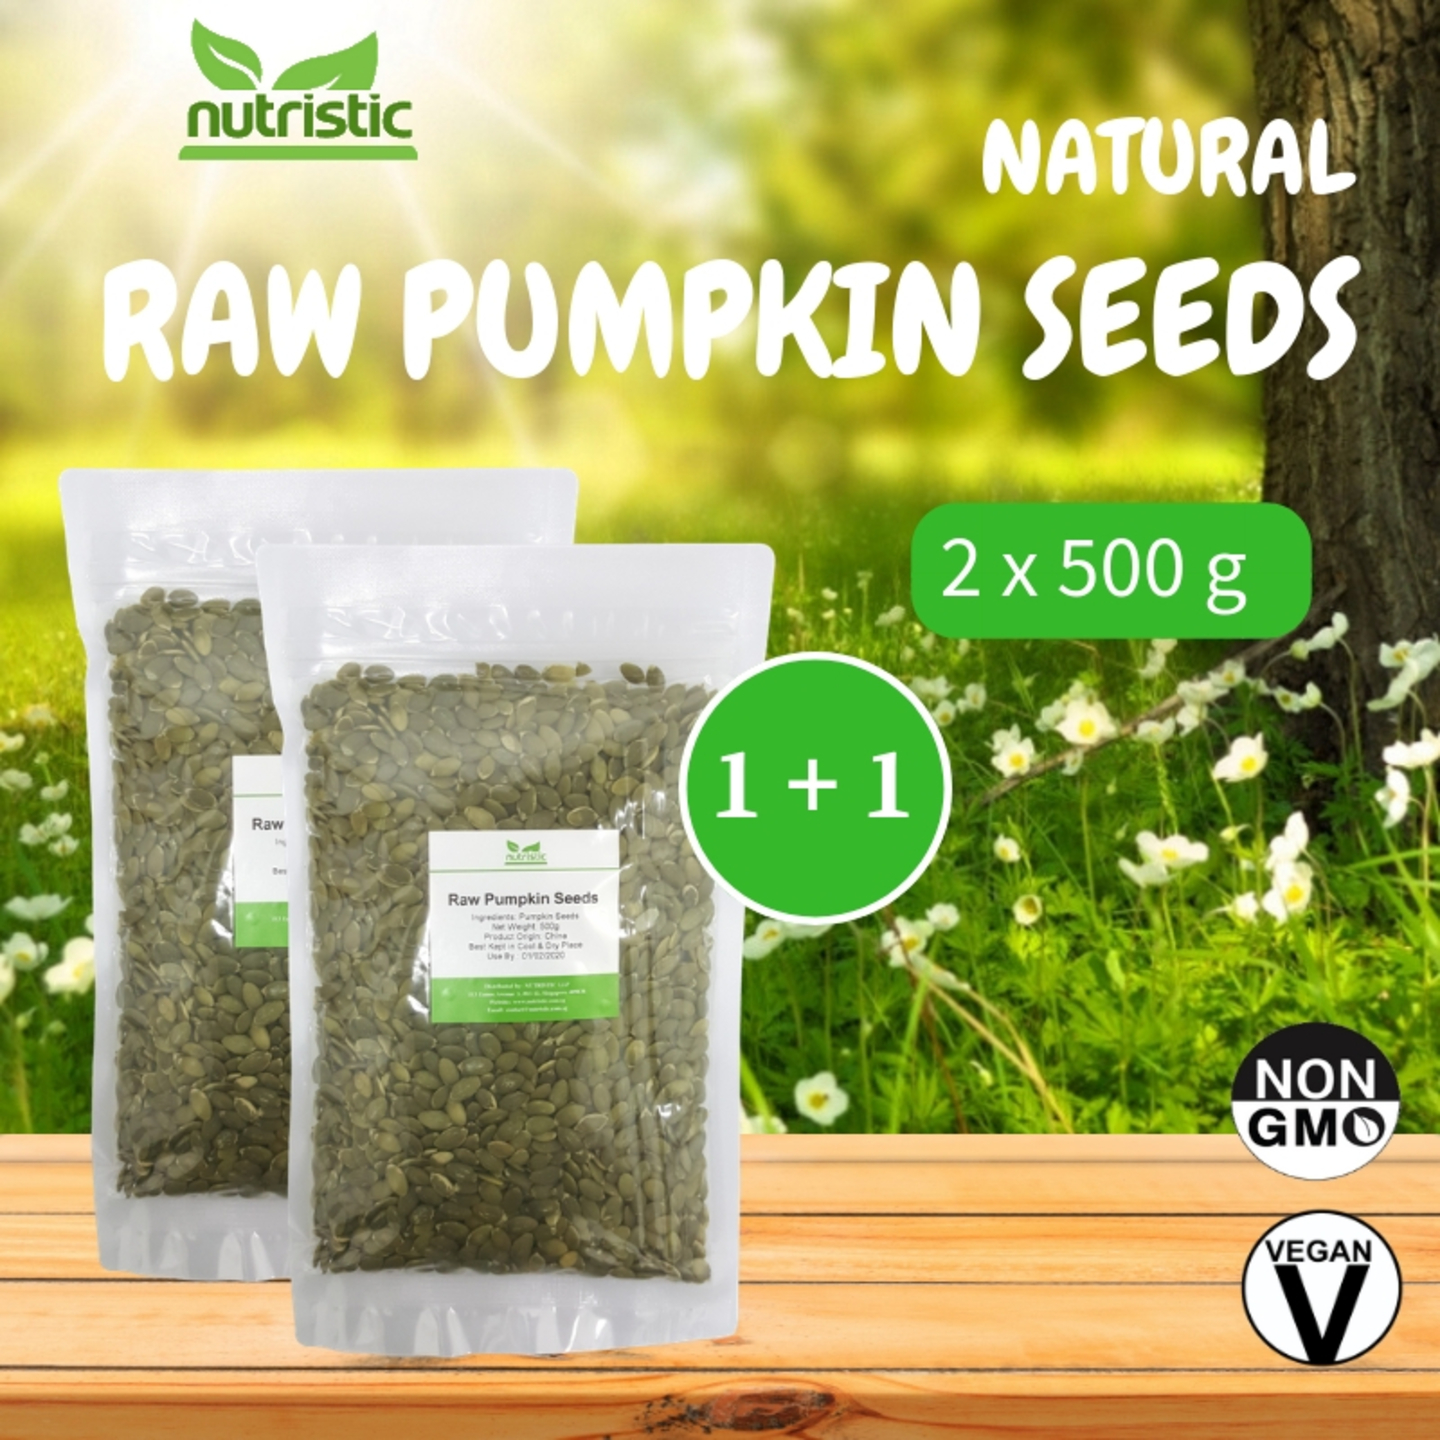 Natural Raw Pumpkin Seeds 500g x2 - Value Bundle 1+1